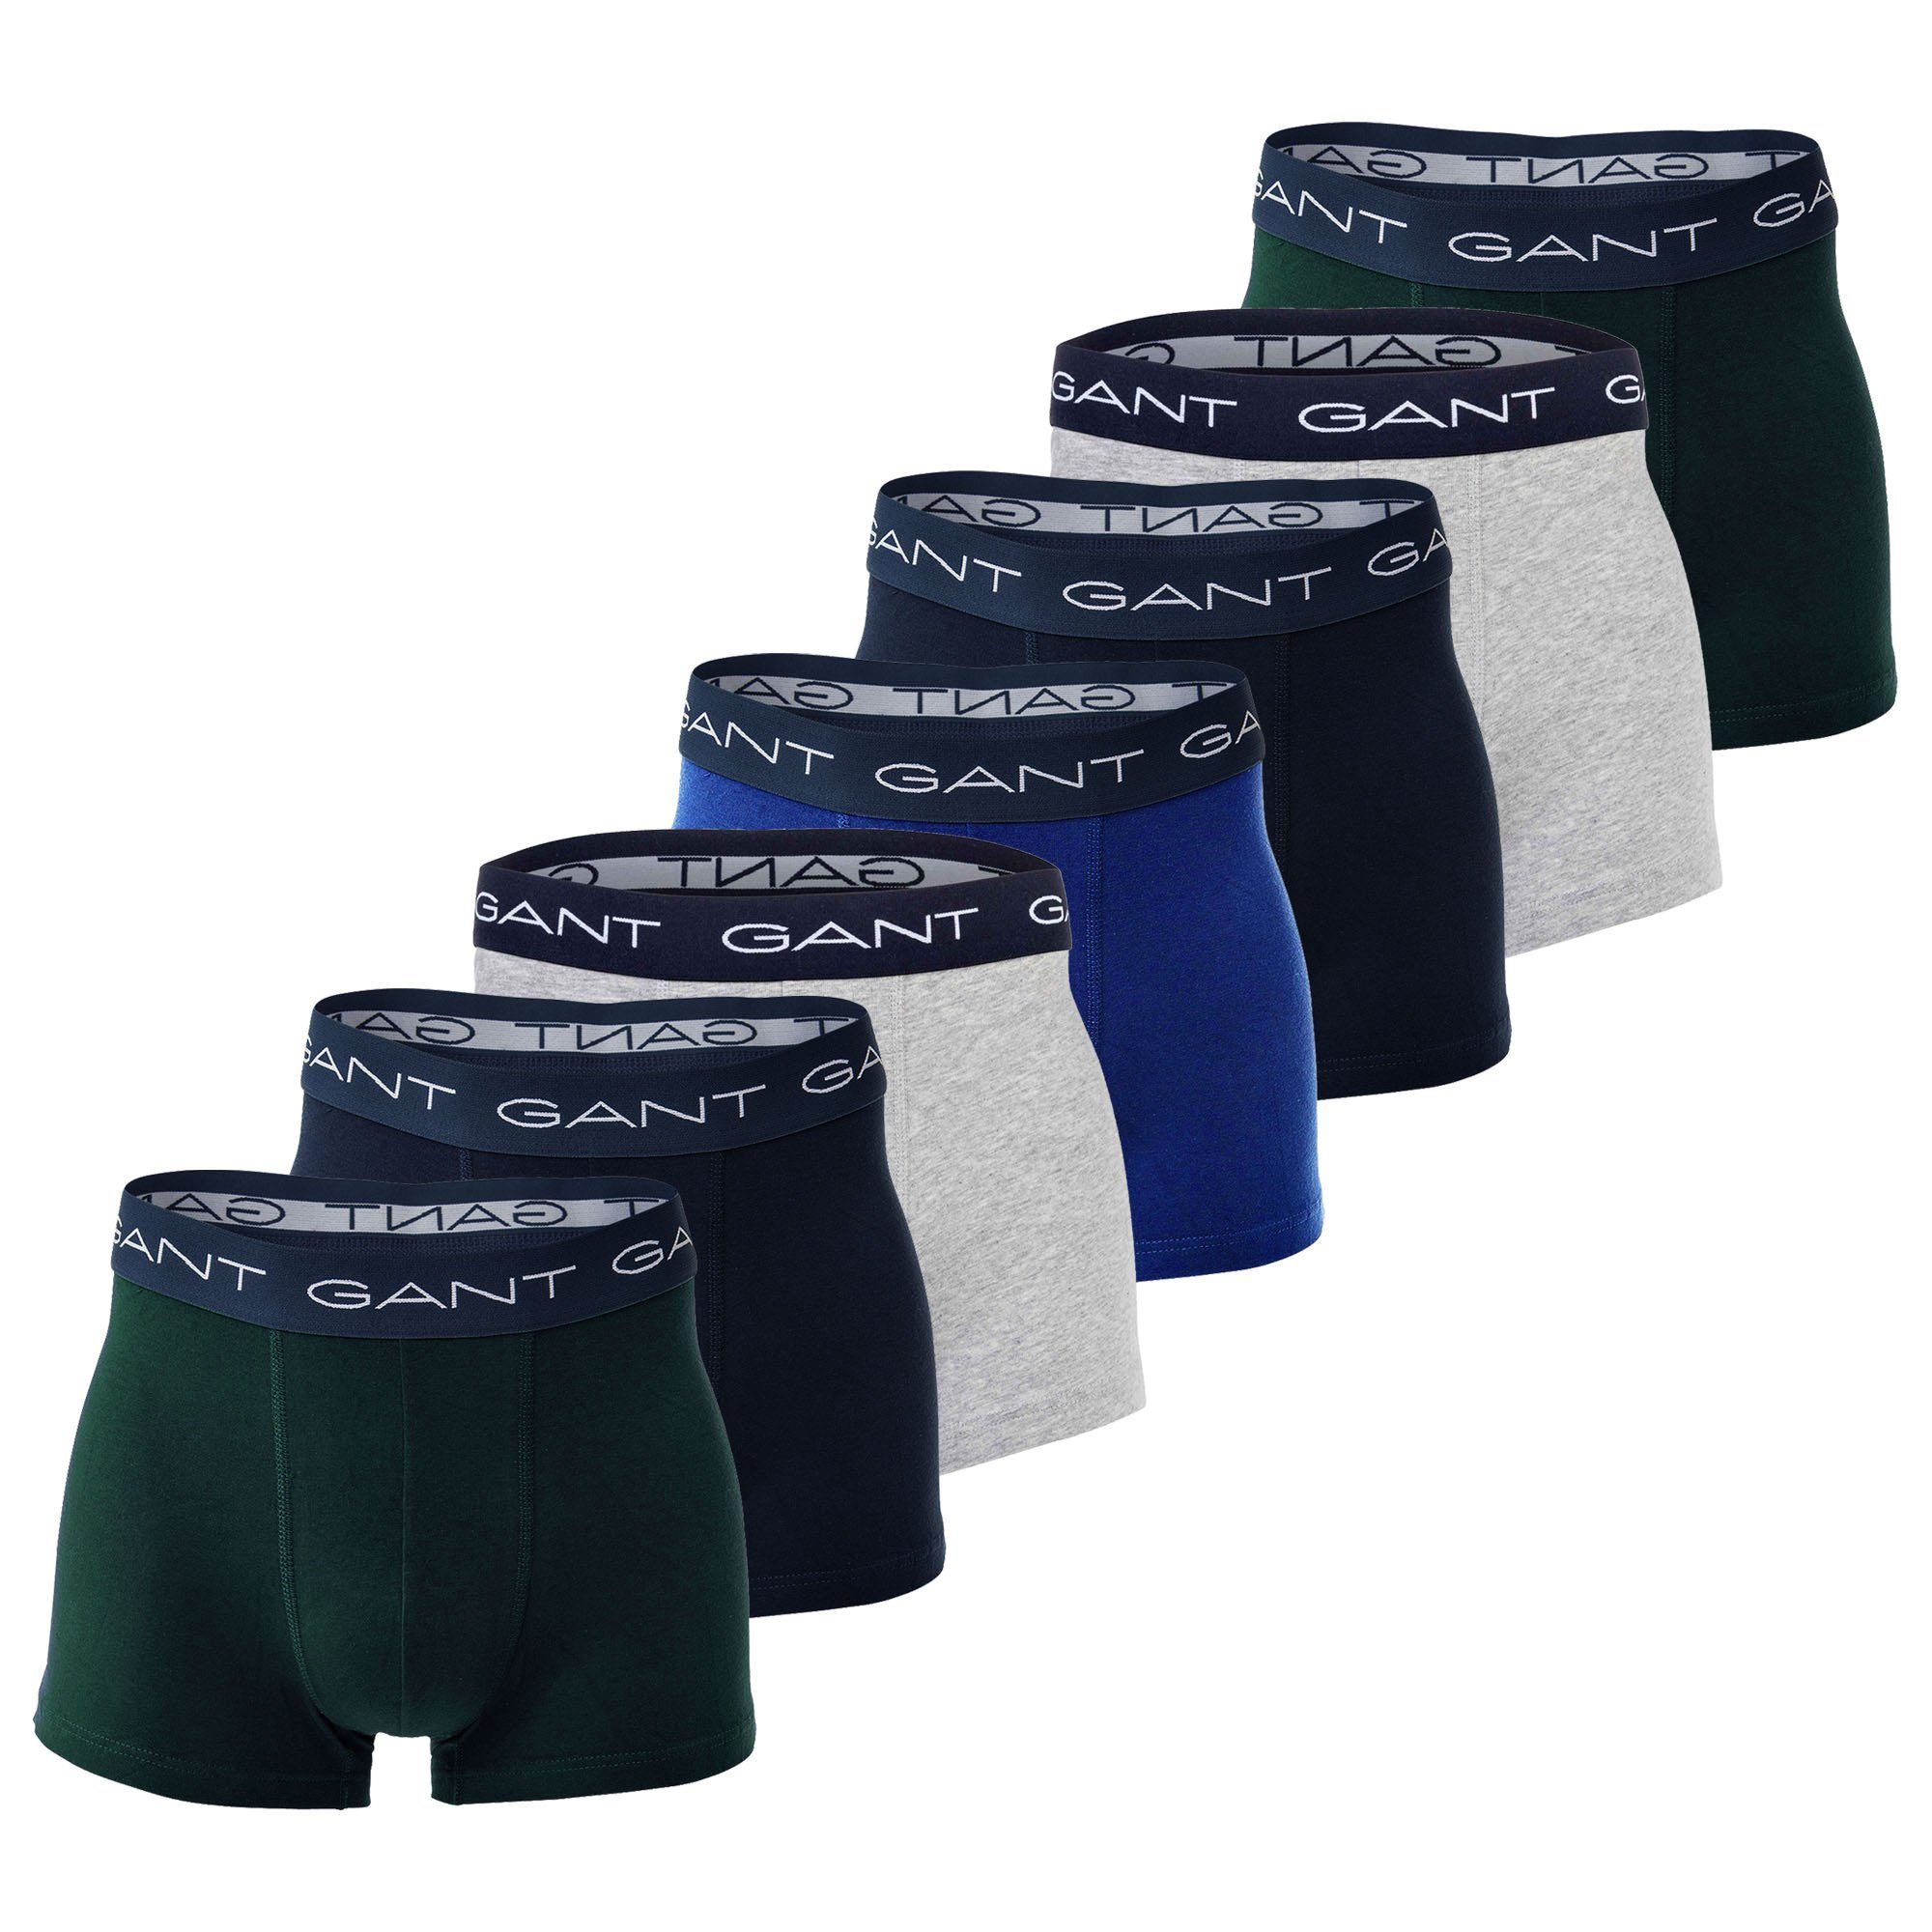 Trunks Boxer Pack Basic - Boxershorts, 7er Herren Blau/Grün/Grau Gant